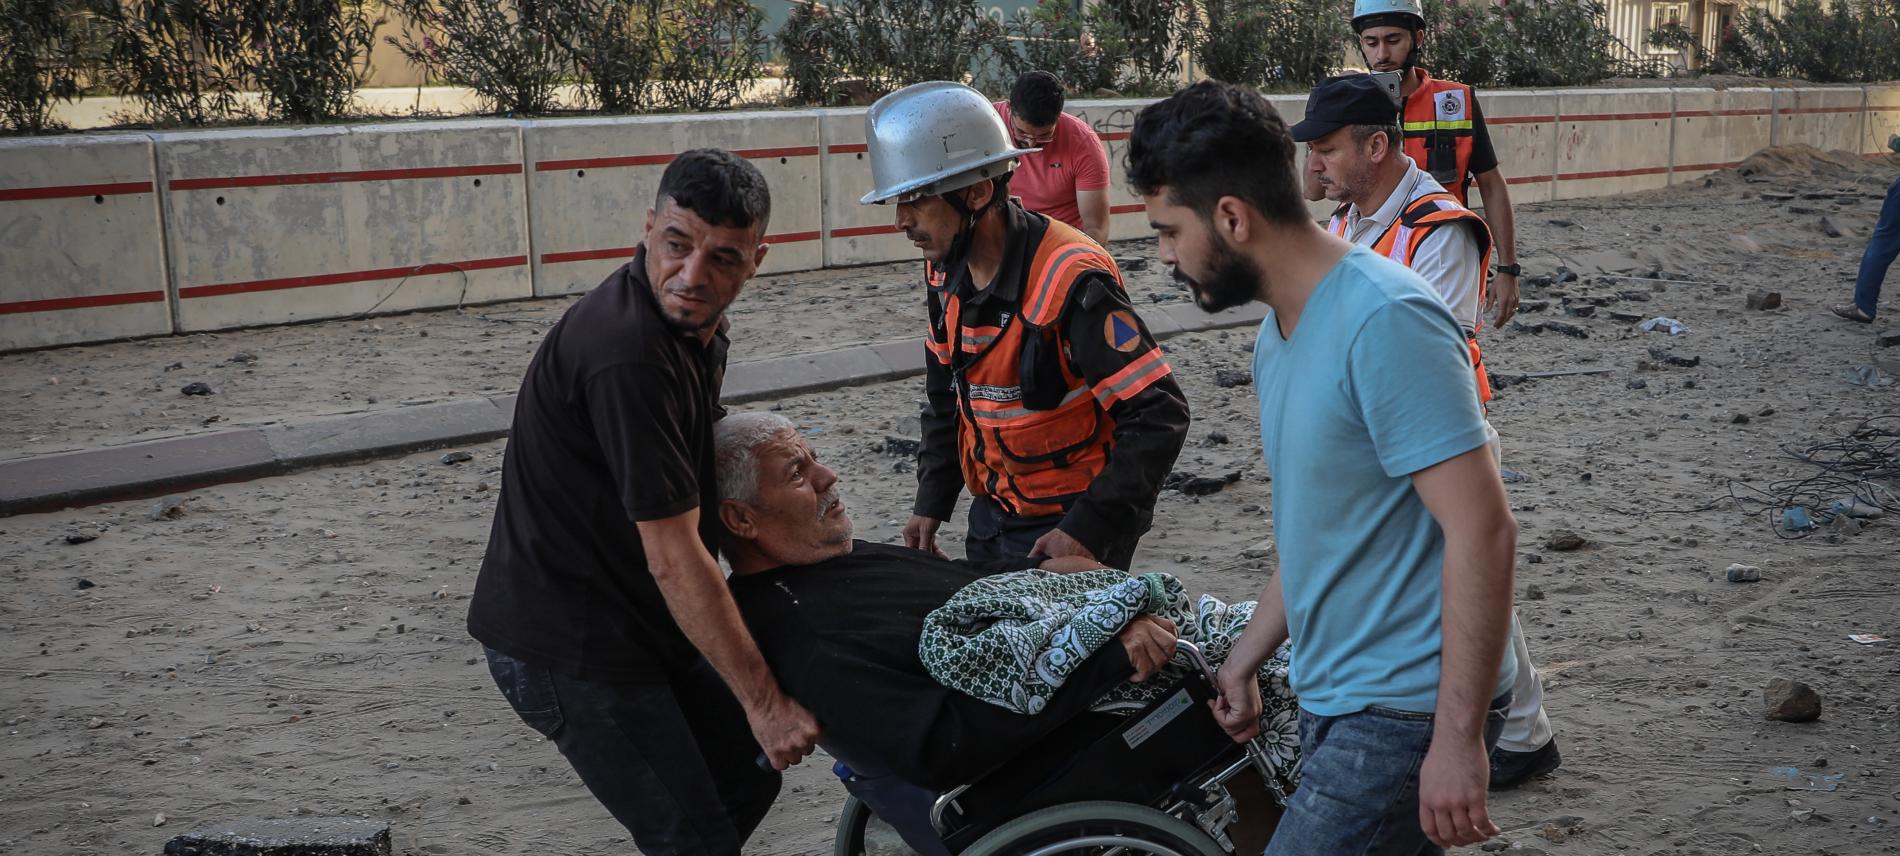 Nachbarn und Rettiungskräfte evakuieren einen alten und behinderten Mann aus dem Gebiet in Gaza-Stadt, das beschossen wurde. Foto: Motaz Azaiza 